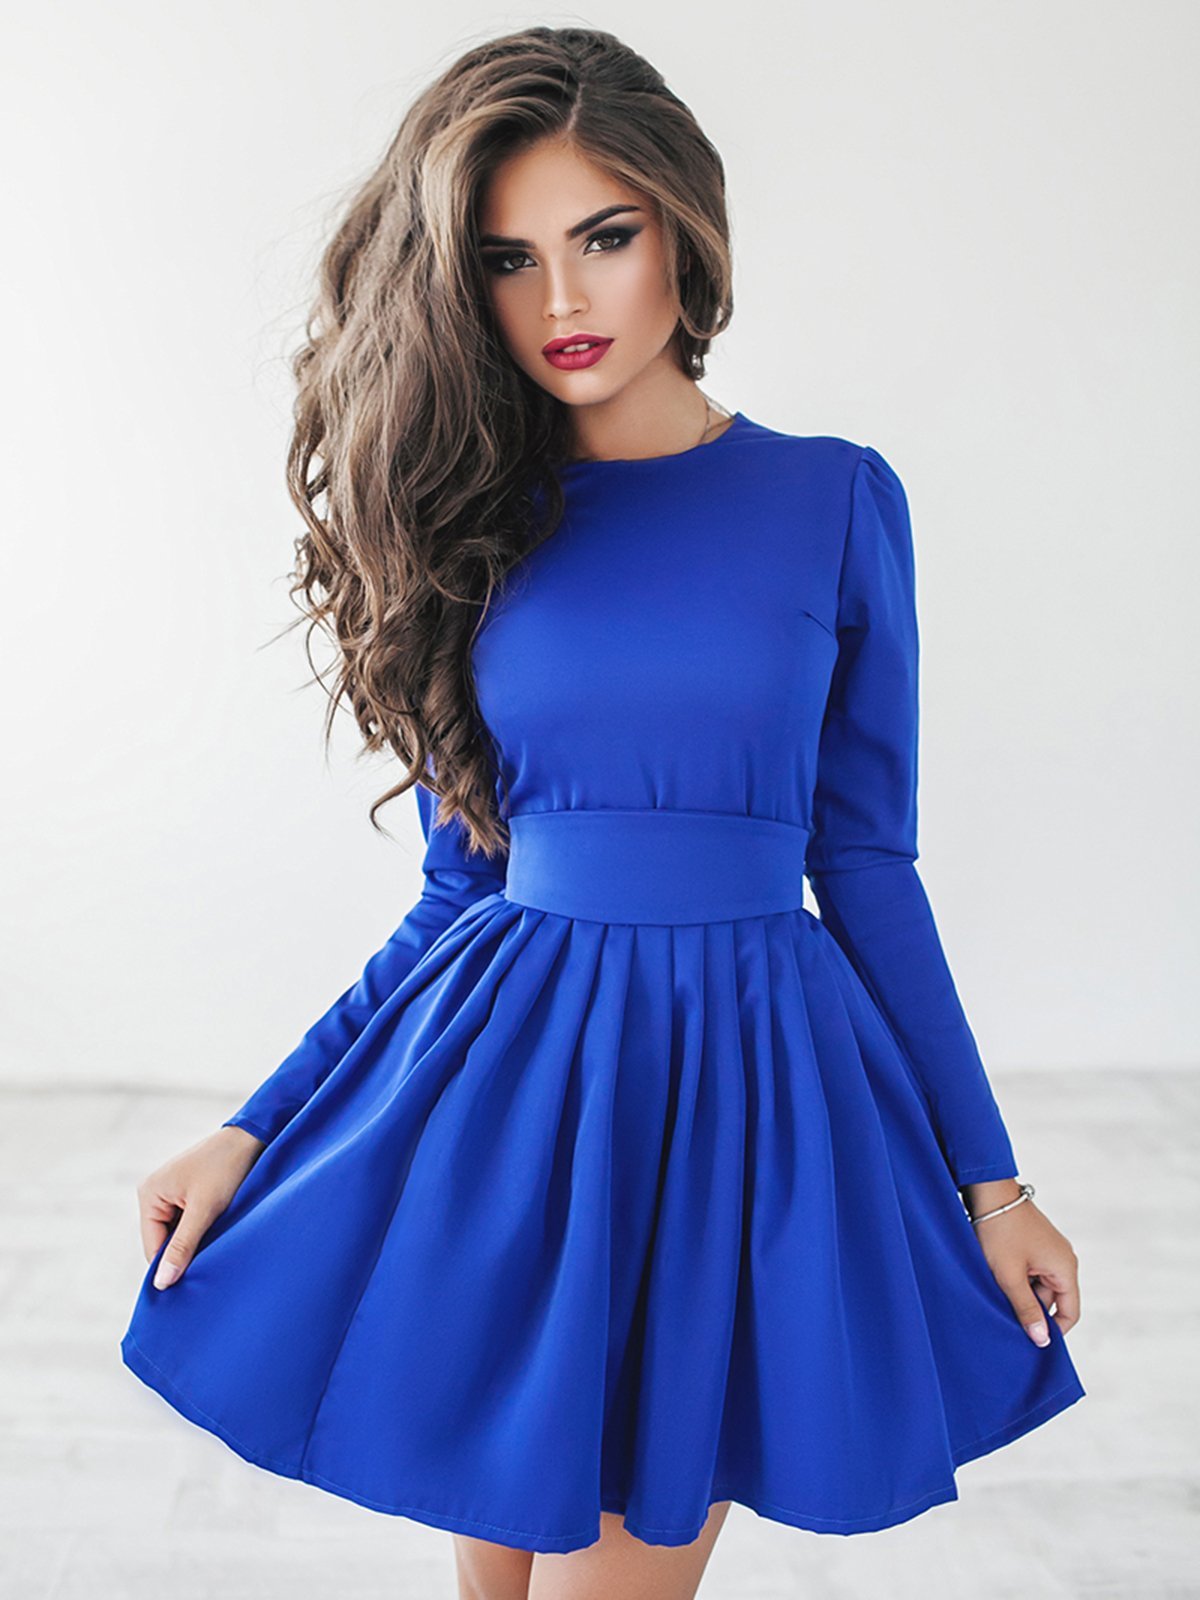 Красивый наряд 4. Платье. Красивые платья. Красивое синее платье. Девушка в платье красивая.